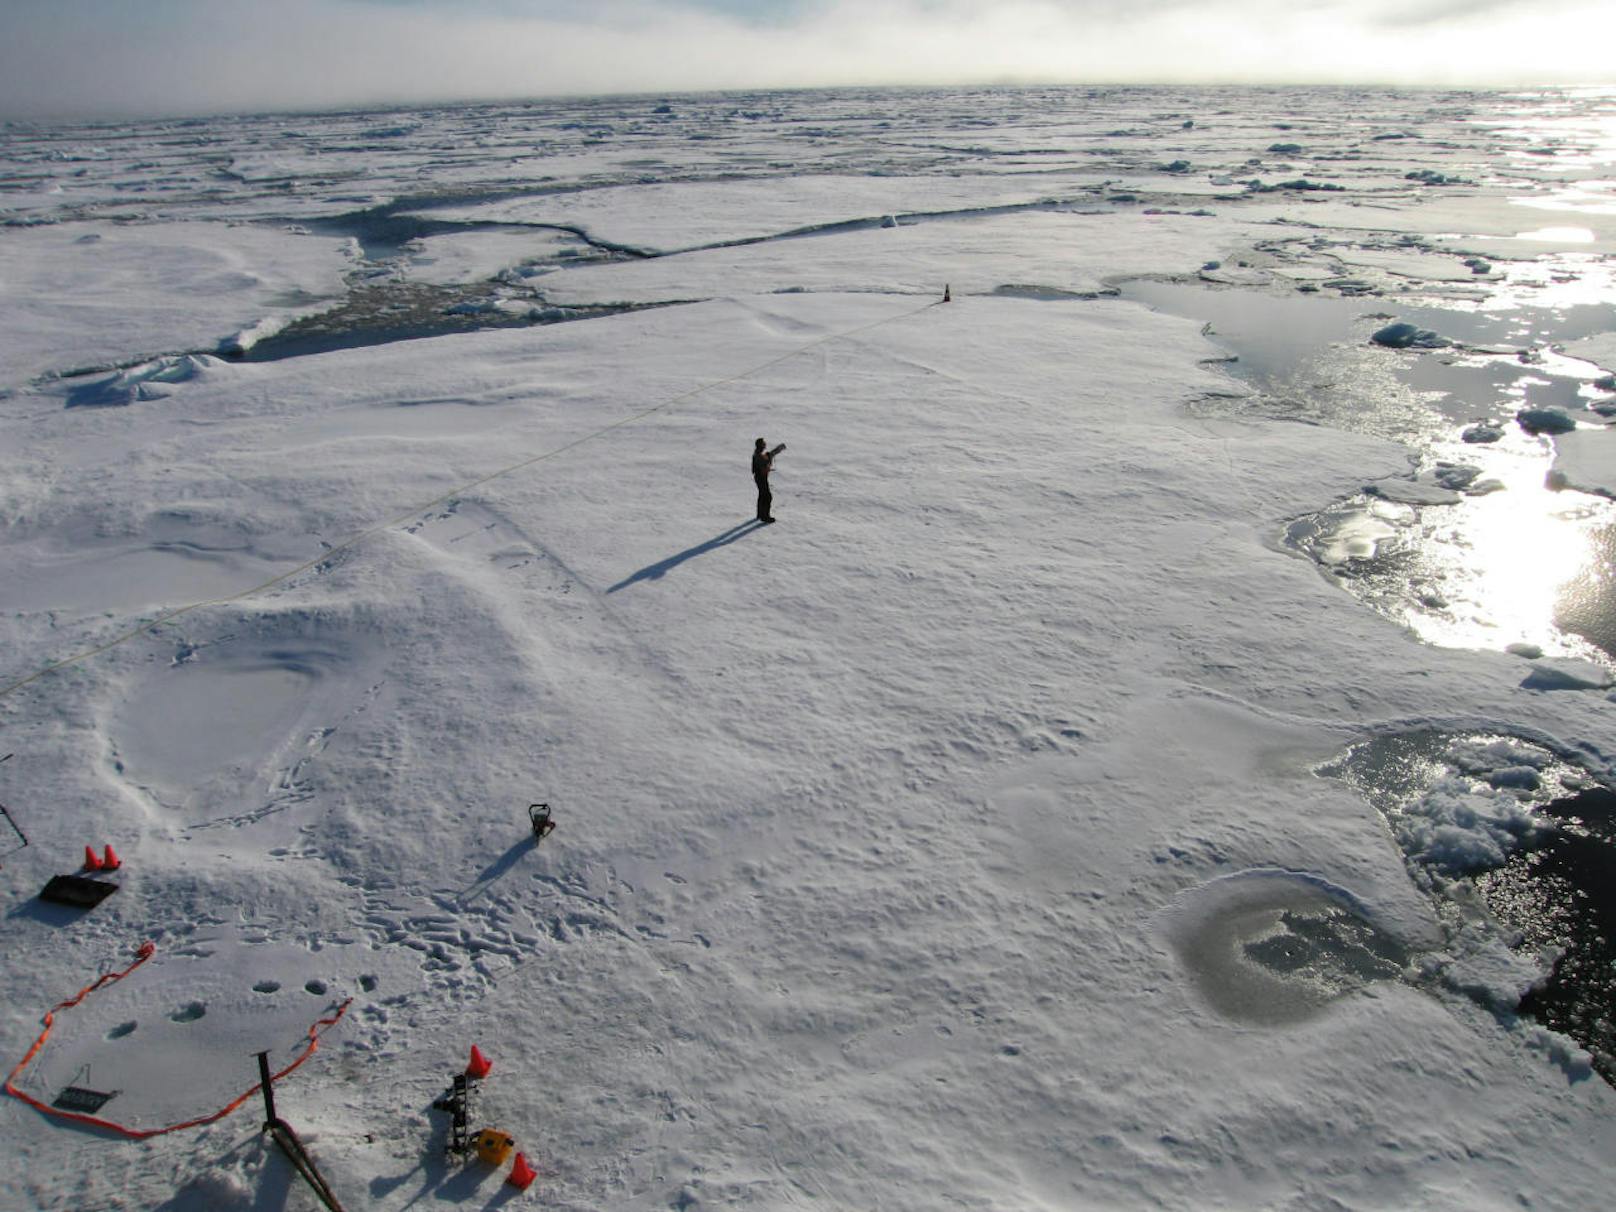 <b>North Ice, Grönland</b>
Kein Ort, um sich dauerhaft sesshaft zu machen: In der Forschungsstation im Zentrum Nordgrönlands wurden am 9. Januar 1954 minus 65,9 Grad Celsius gemessen. Die Station North Ice l befindet sich auf dem gigantischen Gletscher-Eisschild Grönlands.